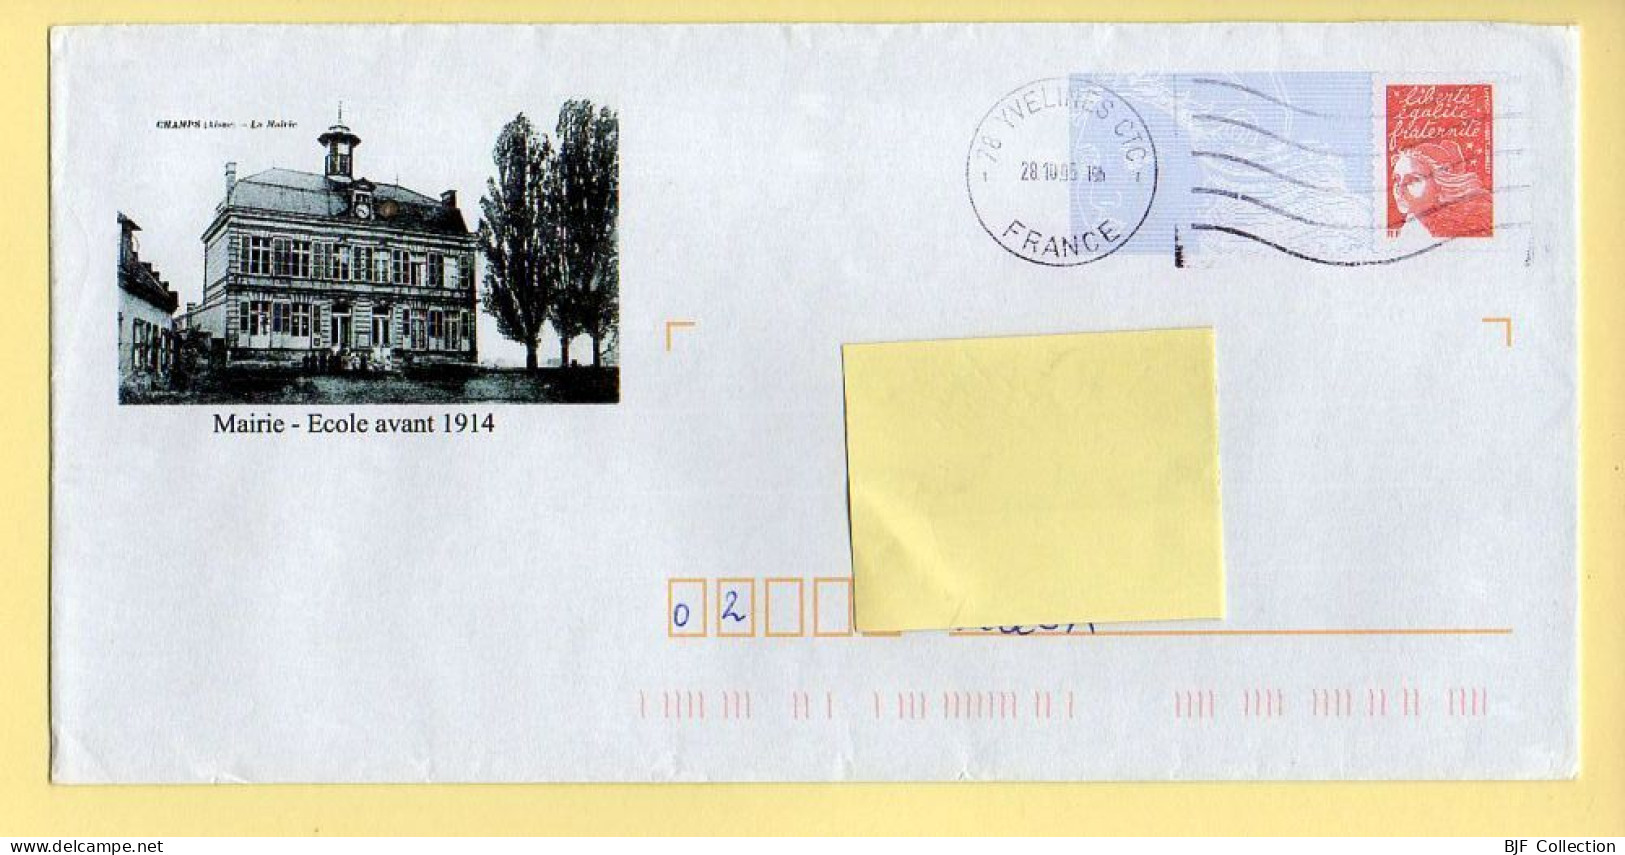 PAP Marianne De Luquet – CHAMPS – Mairie-Ecole Avant 1914 (02) (N° 809 – Lot B2J/0401894) – 28/10/2005 - PAP: Aufdrucke/Luquet